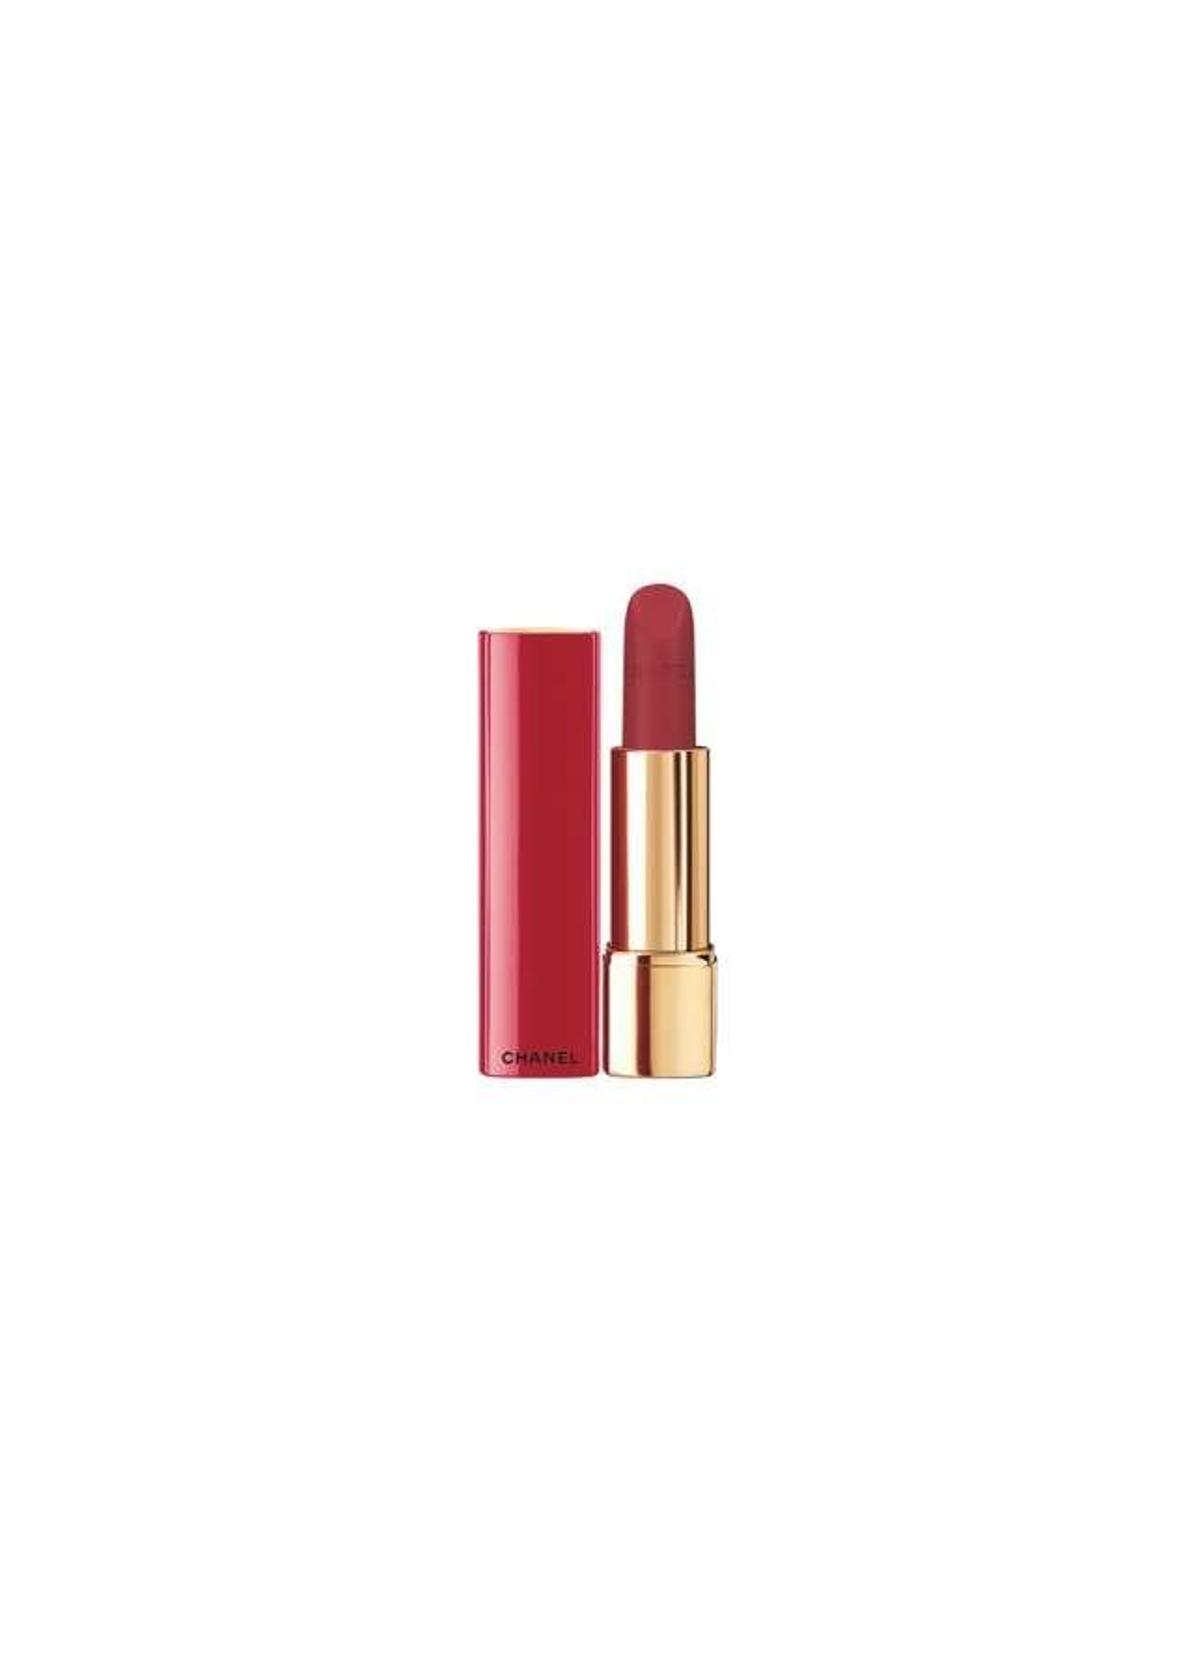 Rouge Allure Velvet, tono 207 N°2, de la Collection Libre, de Chanel.